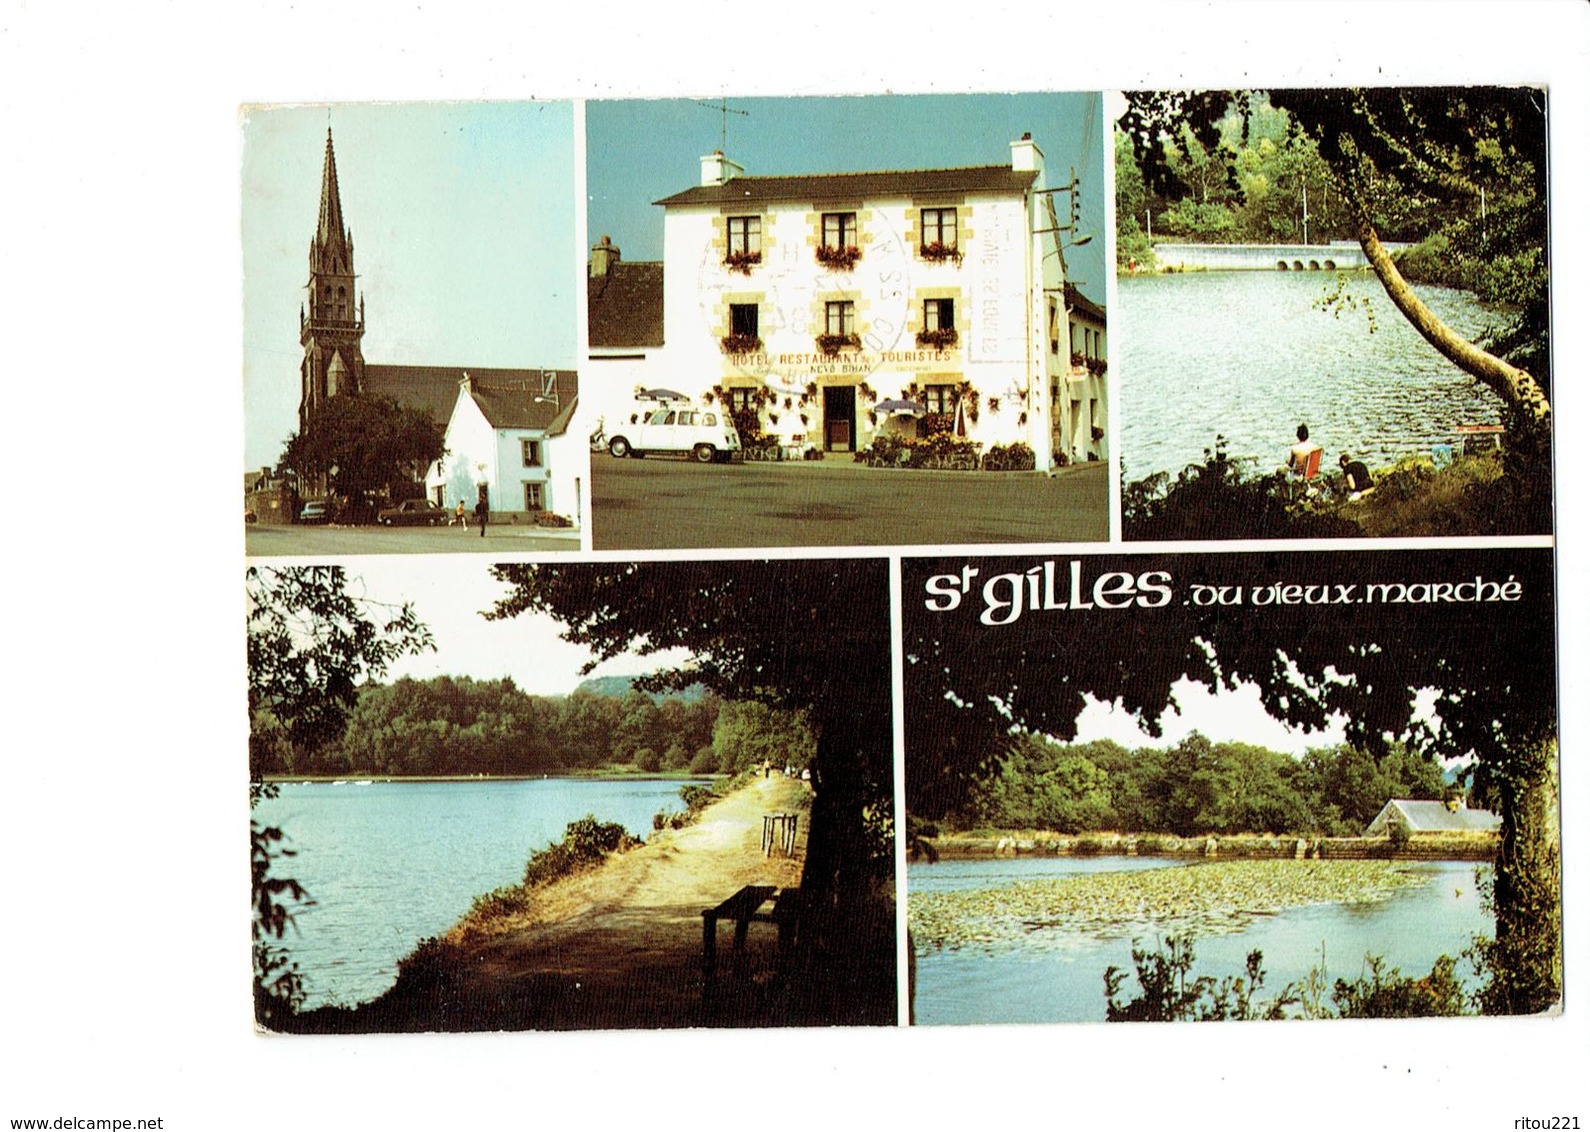 Cpm - 22 - Saint-Gilles-Vieux-Marché - HOTEL NEVO LE BIHAN - 1984 - Voiture Renault 4L - Saint-Gilles-Vieux-Marché